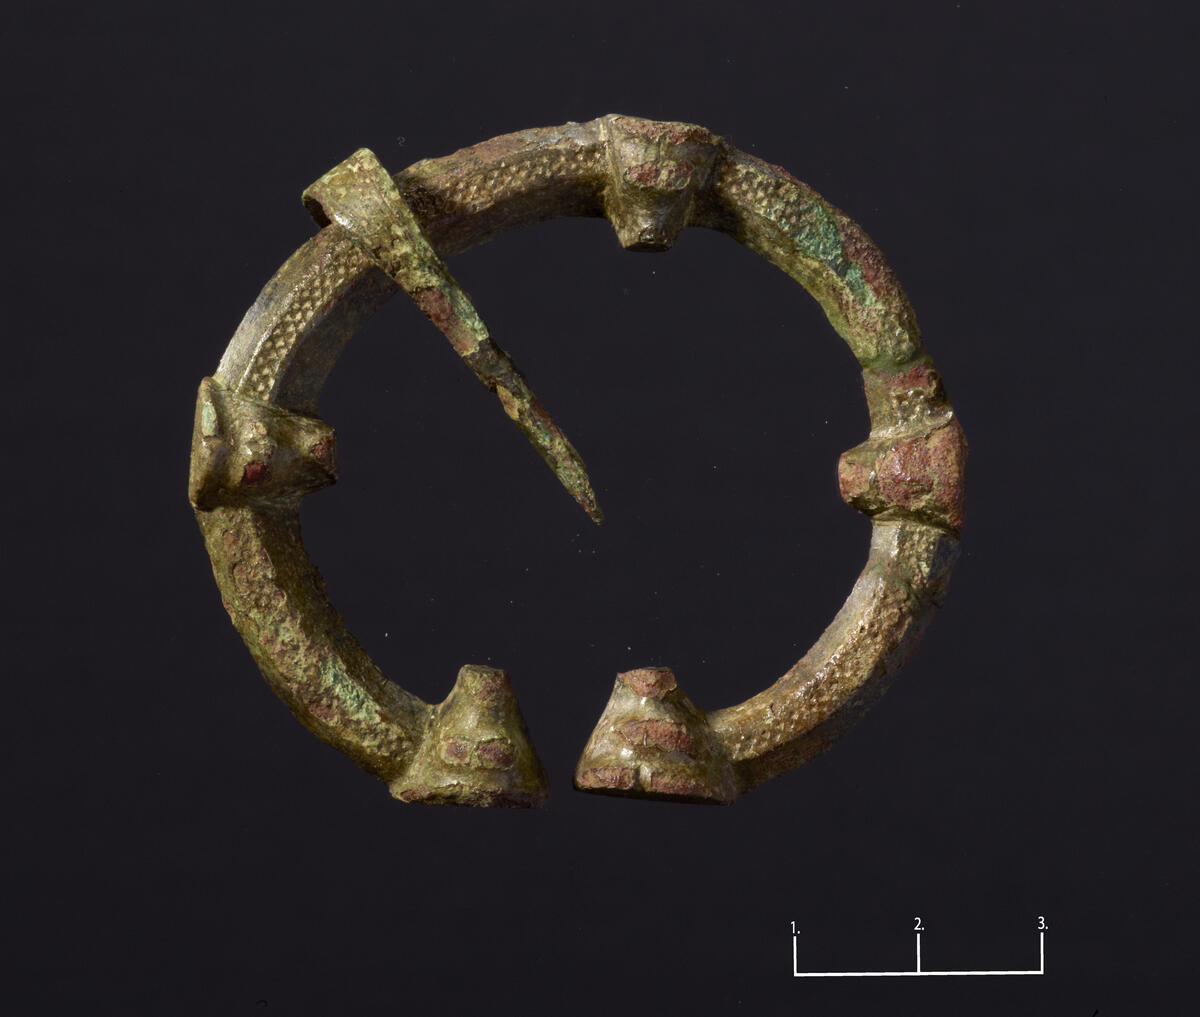 Ringspenne av bronse, funnet i 5 fragmenter. Utsmykket med 5 dyrehoder. Nålen til spennen ble funnet sammen med denne.